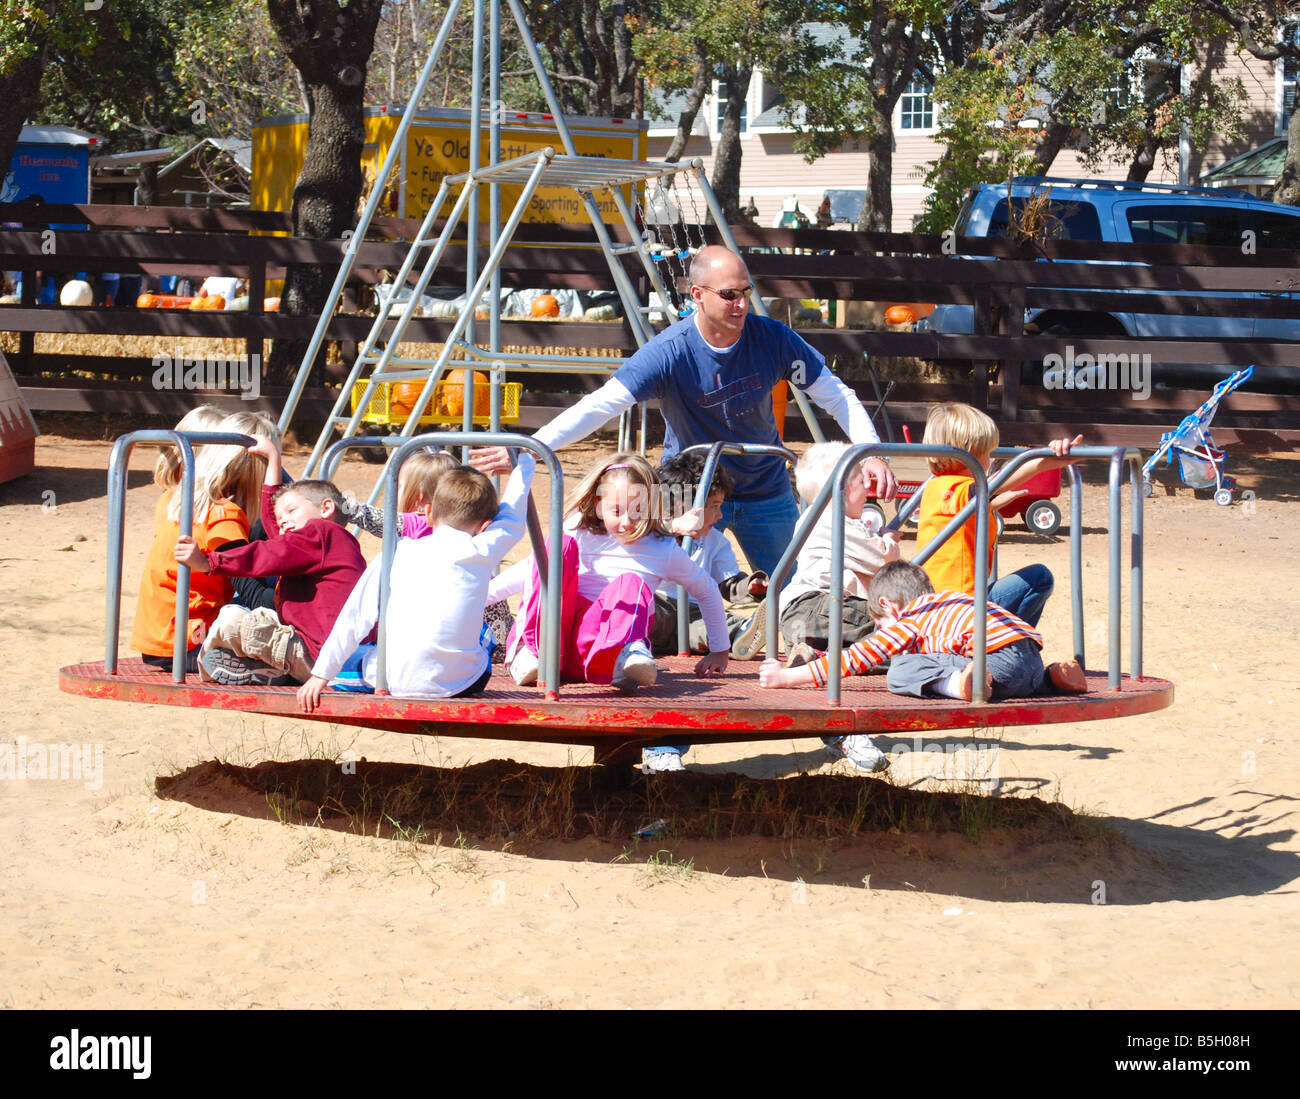 Père poussant les enfants sur un manège à une aire de jeux Banque D'Images